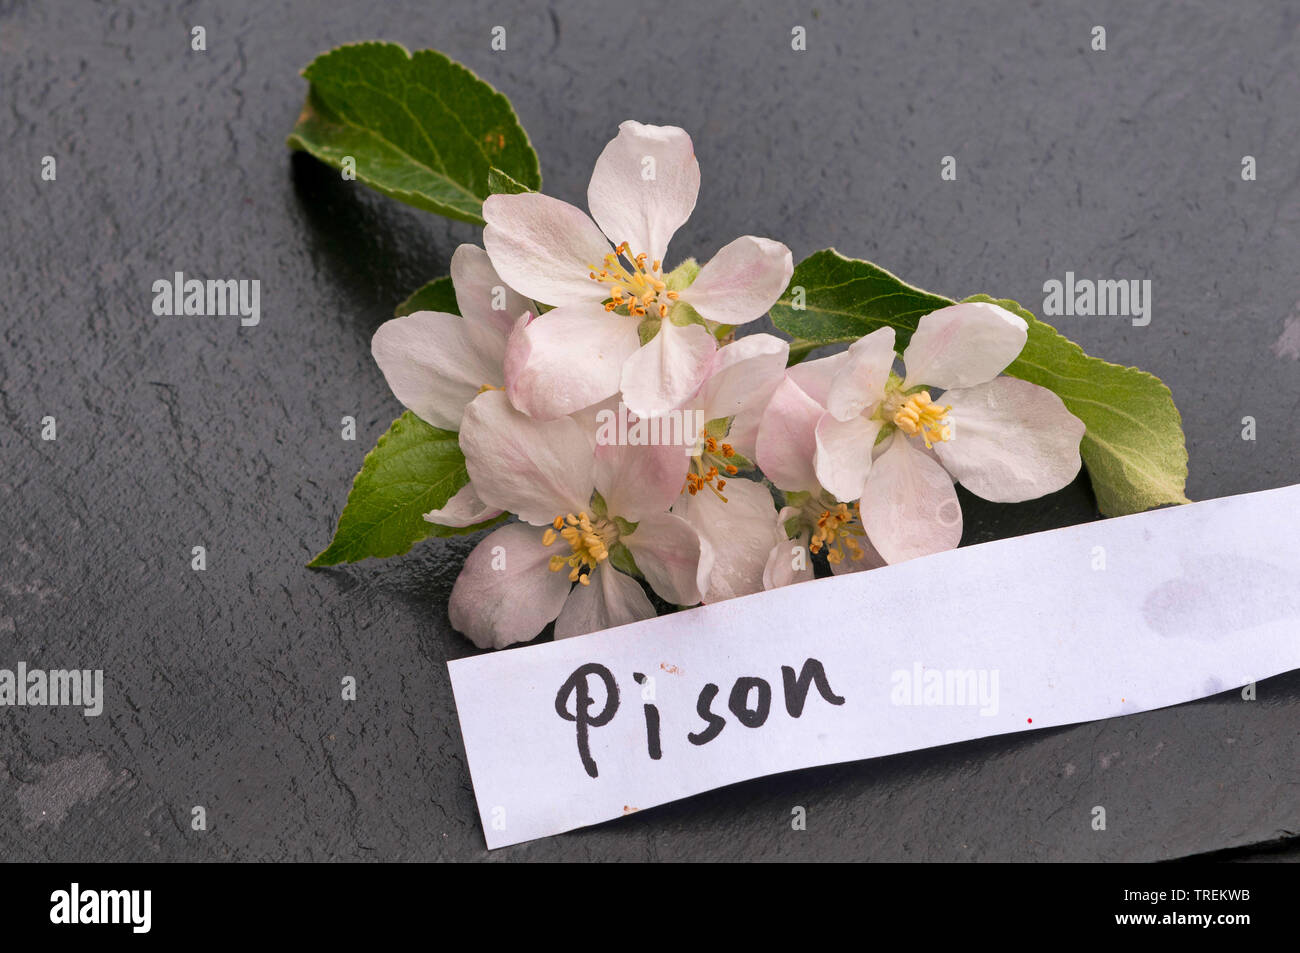 Apfelbaum (Malus Domestica" Pison", Malus Domestica Pison), Apple Blumen eines alten Sorten mit Etikette, Pison, Deutschland Stockfoto